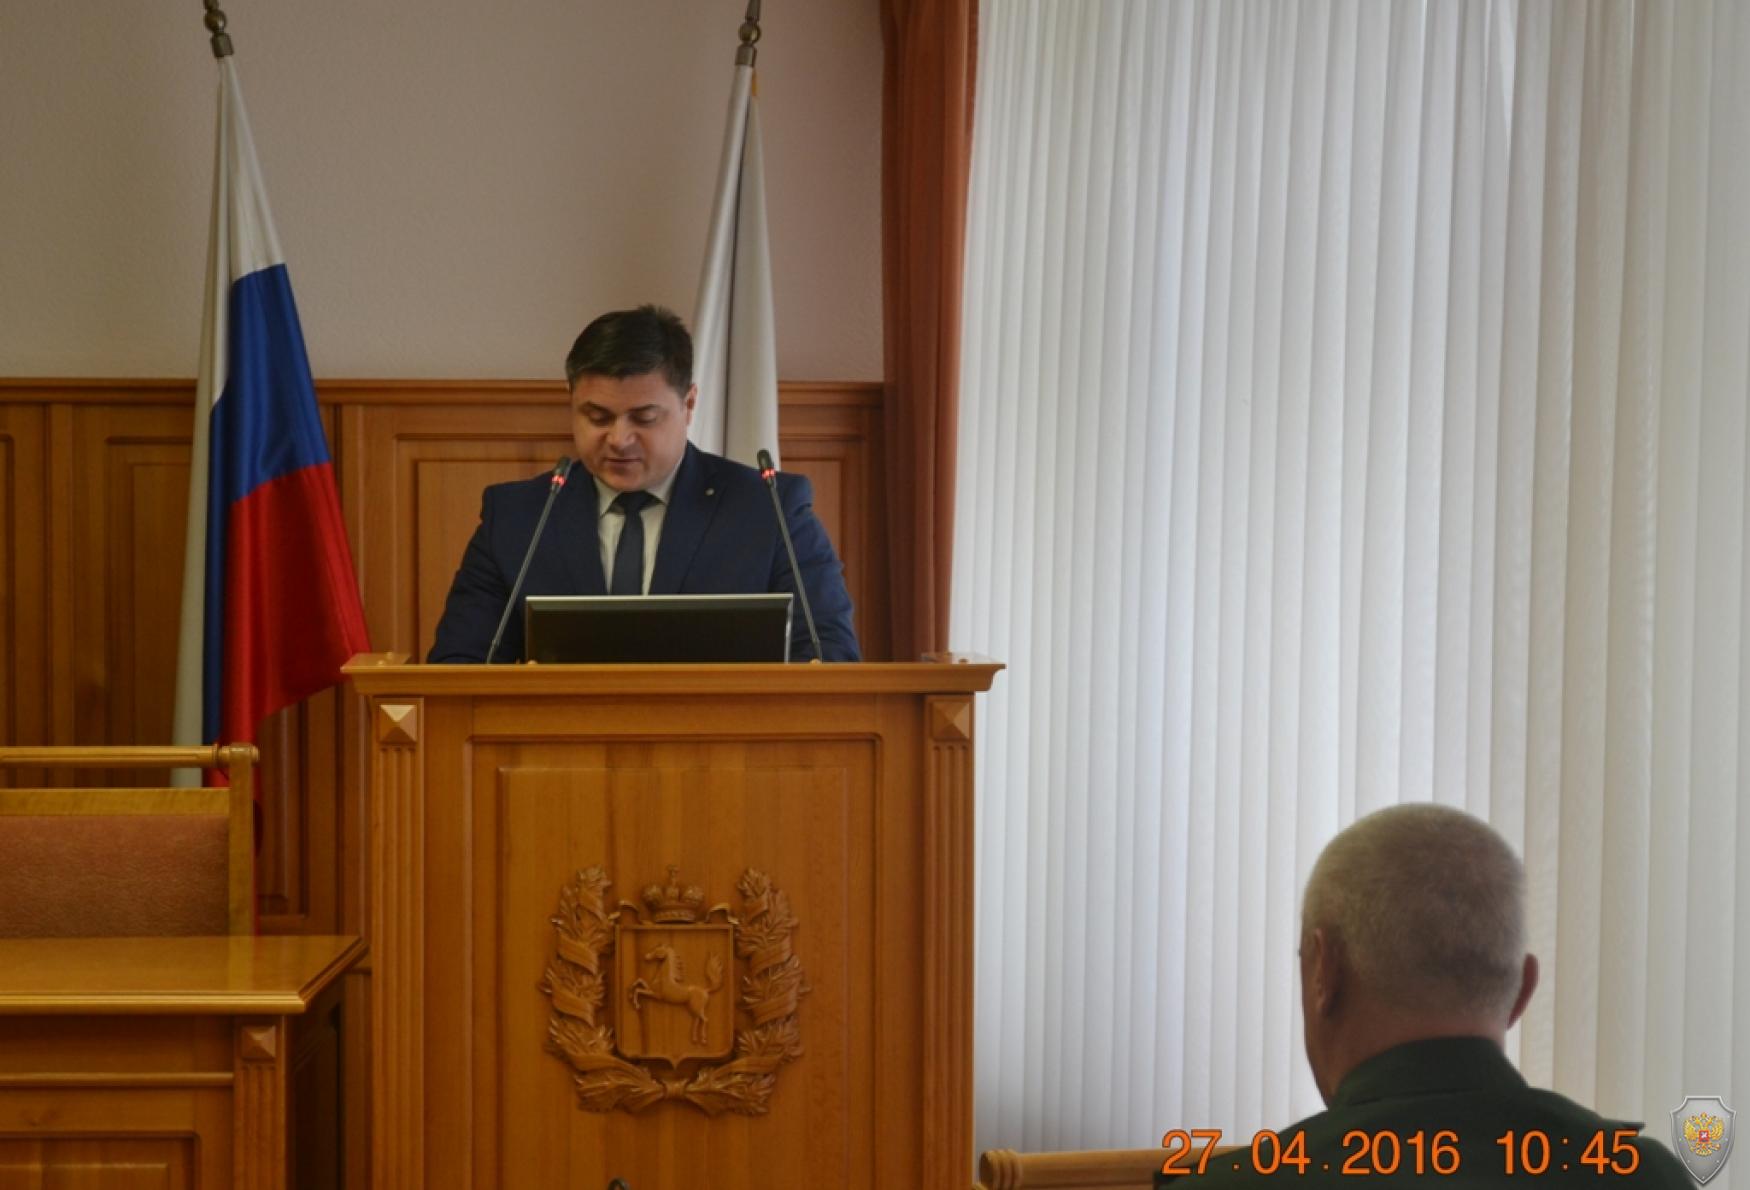 Выступление заместителя мэра г. Томска по безопасности Сурикова Е.И.